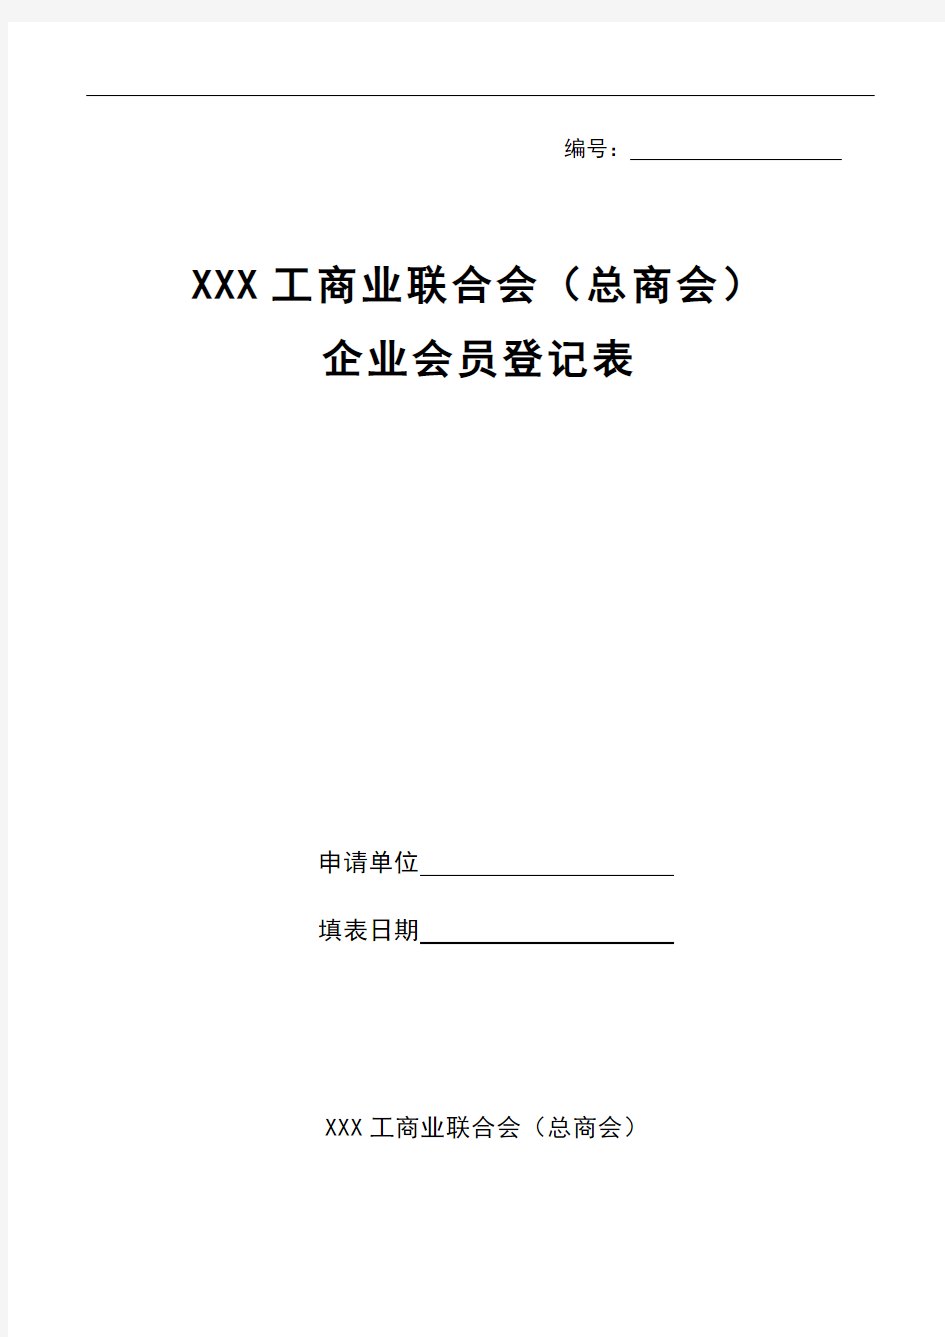 XXX工商业联合会(总商会)企业会员登记表